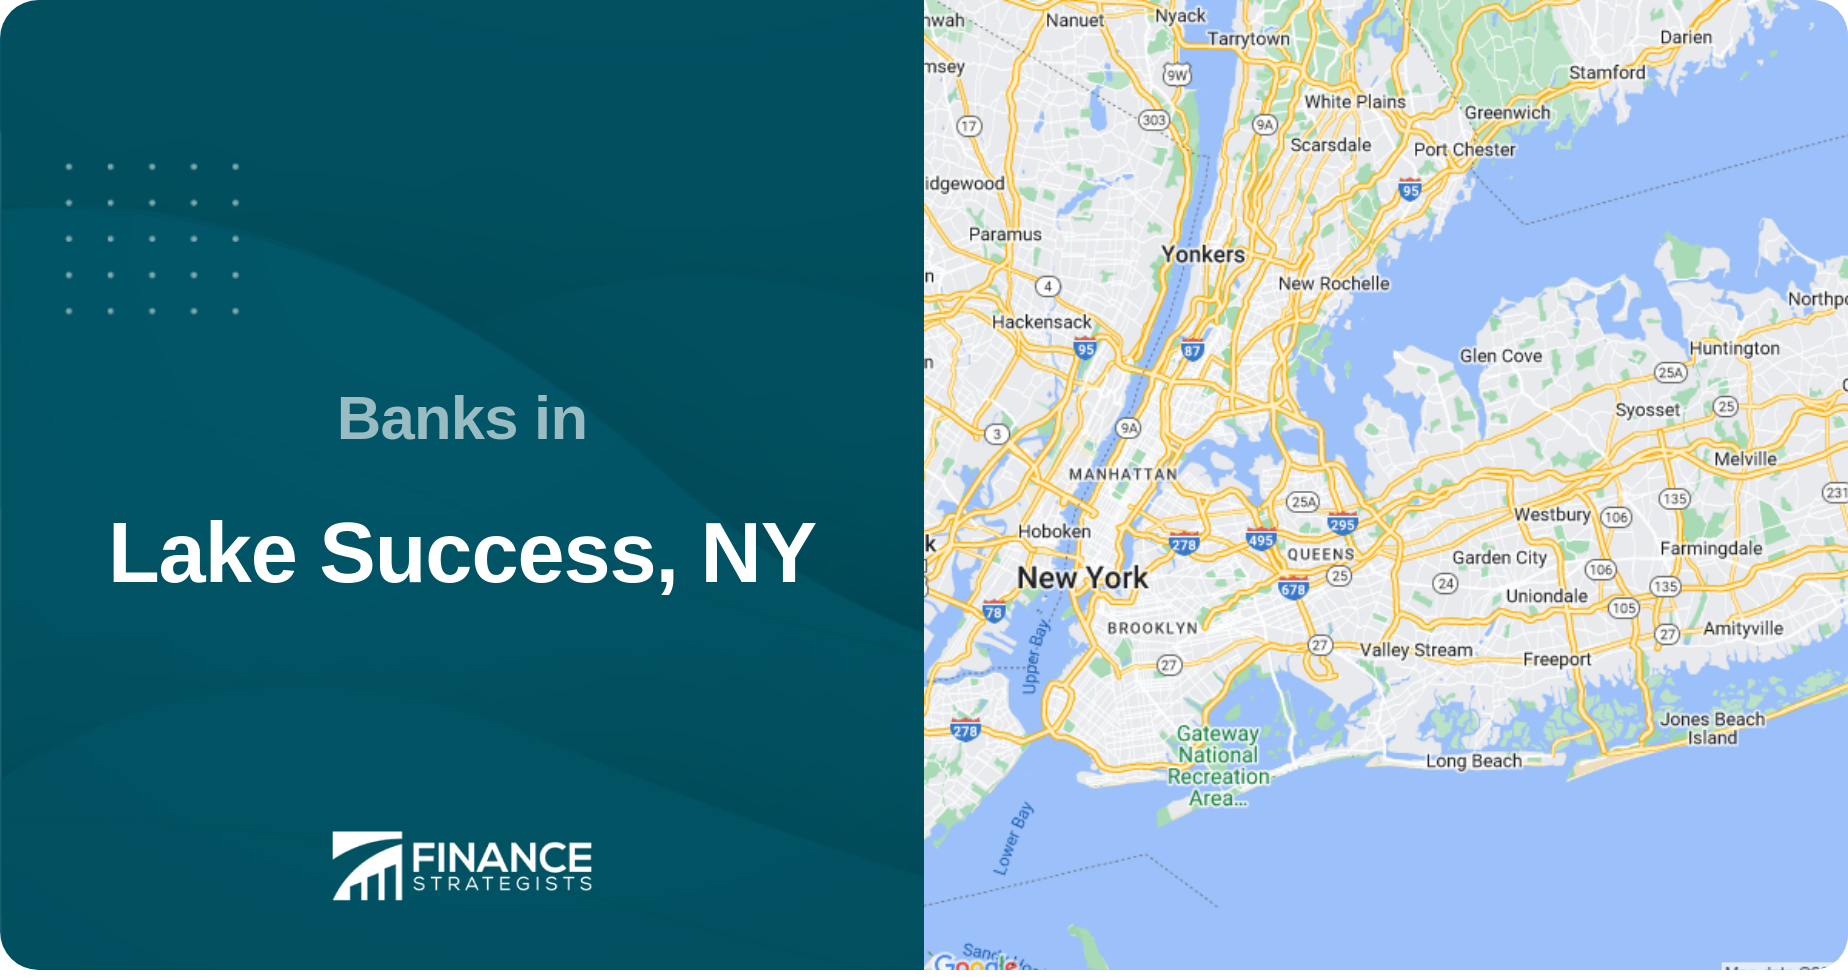 Banks in Lake Success, NY